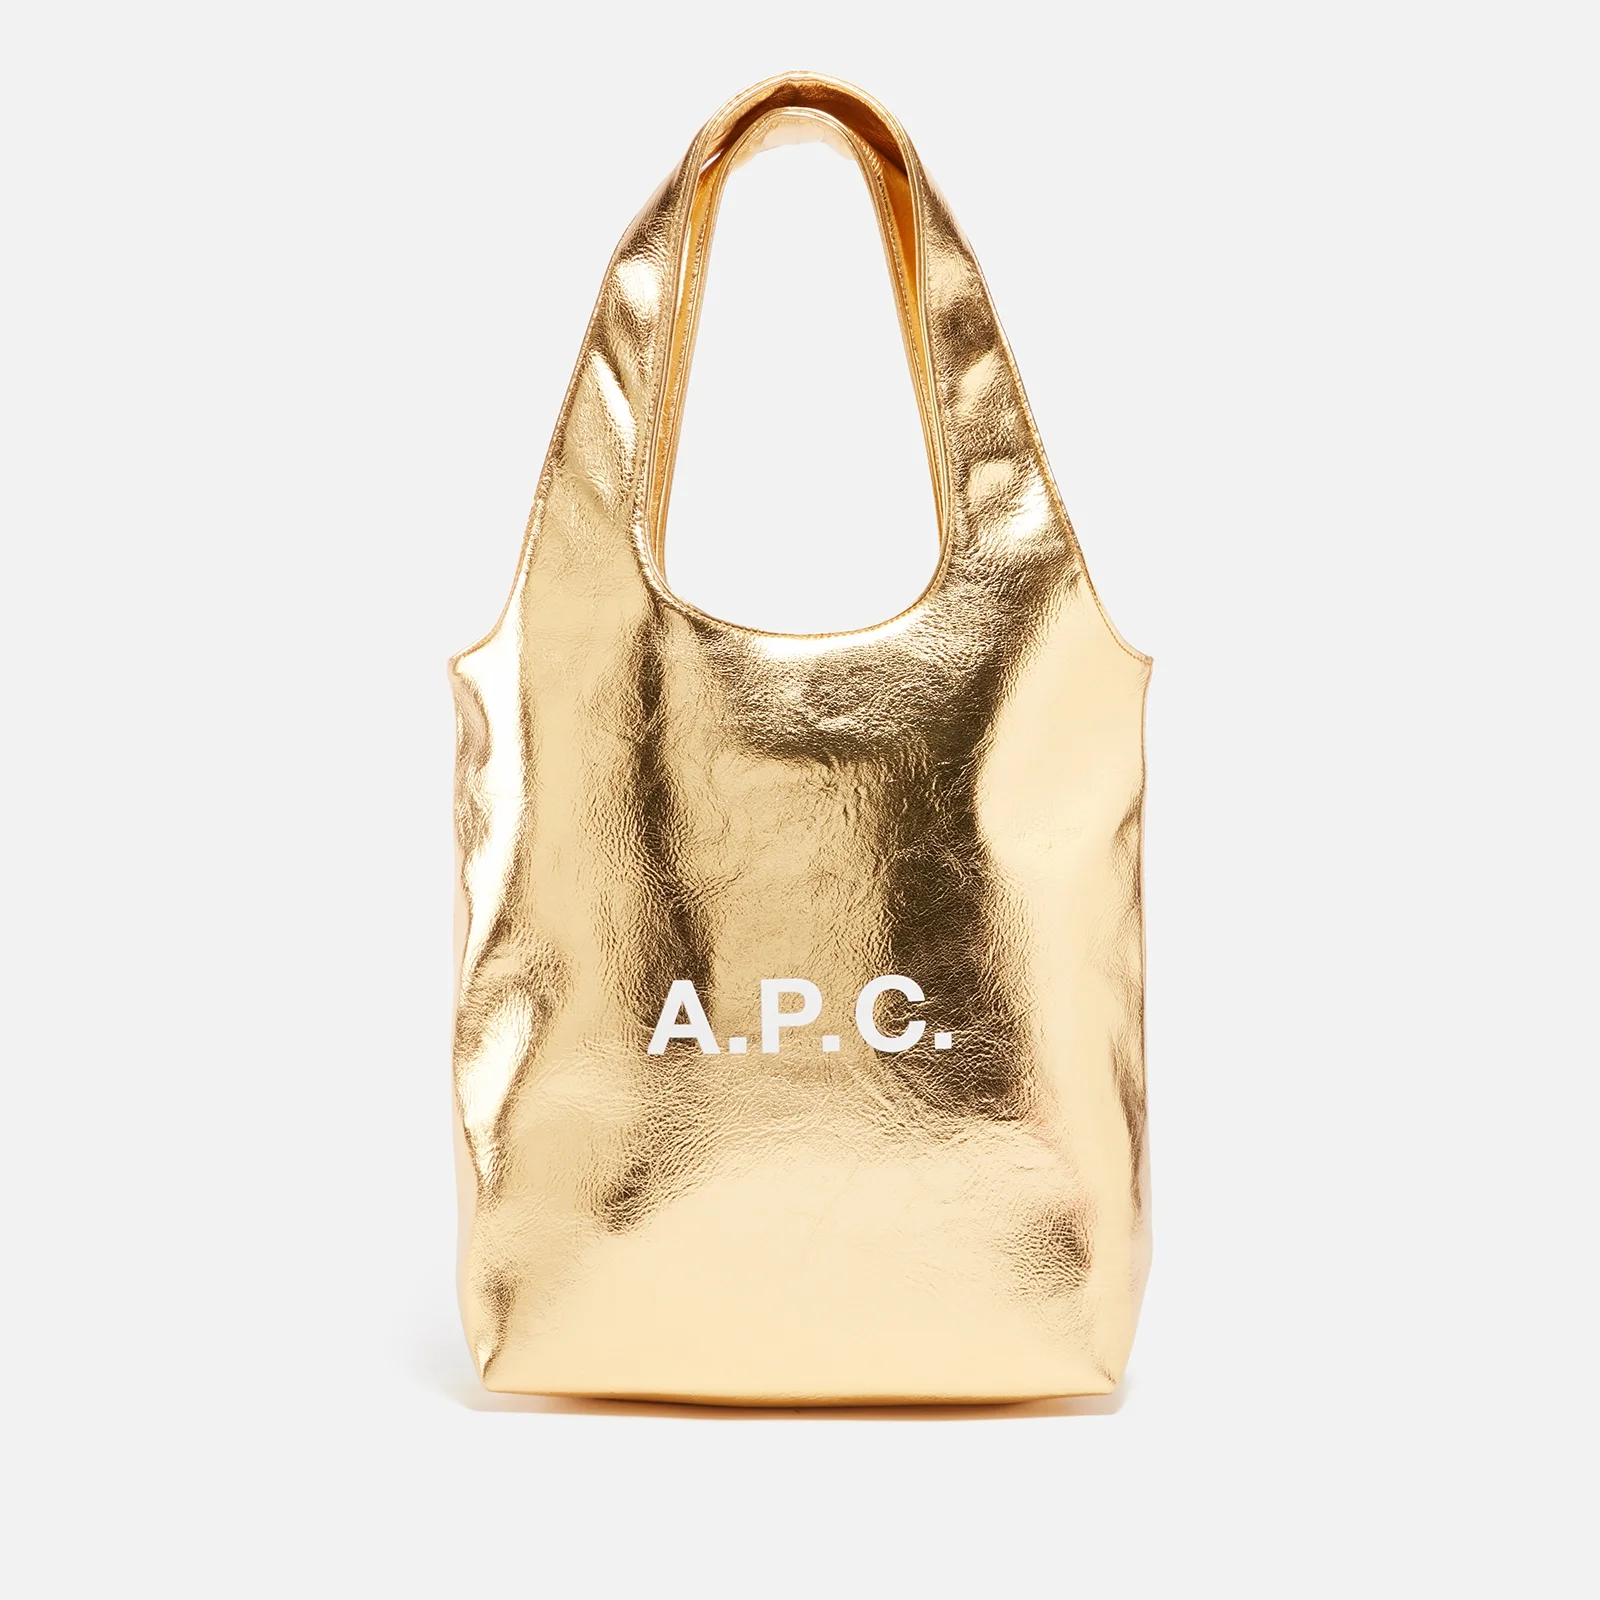 A.P.C. Ninon Faux Leather Tote Bag Image 1